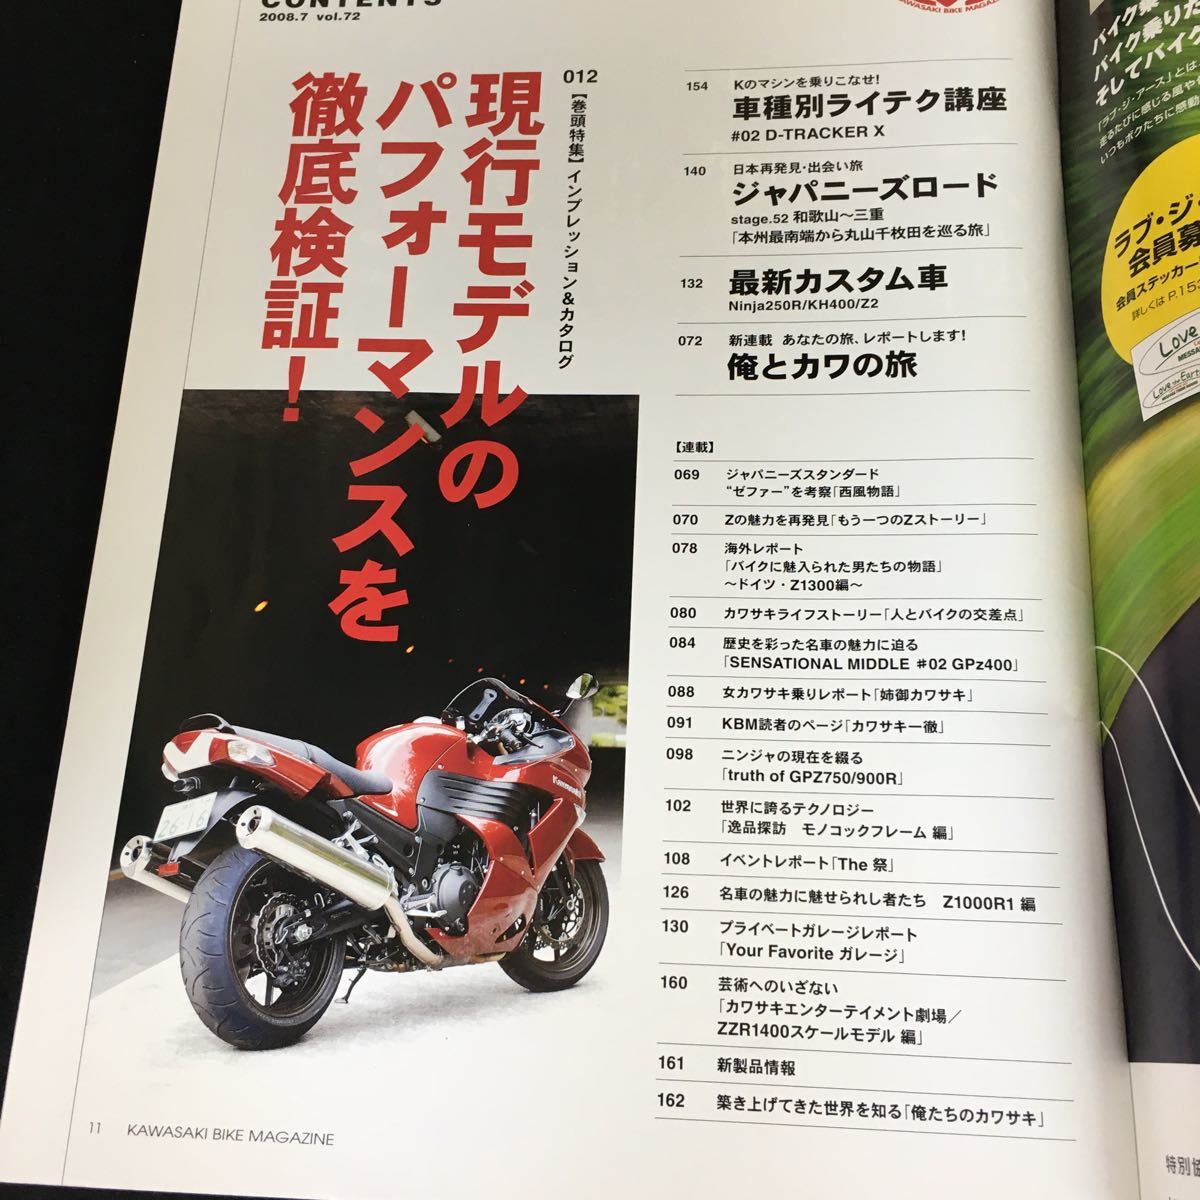 c-455 Kawasaki カワサキバイクマガジン7月号 vol.72 株式会社ぶんか社 平成20年発行※12_画像2